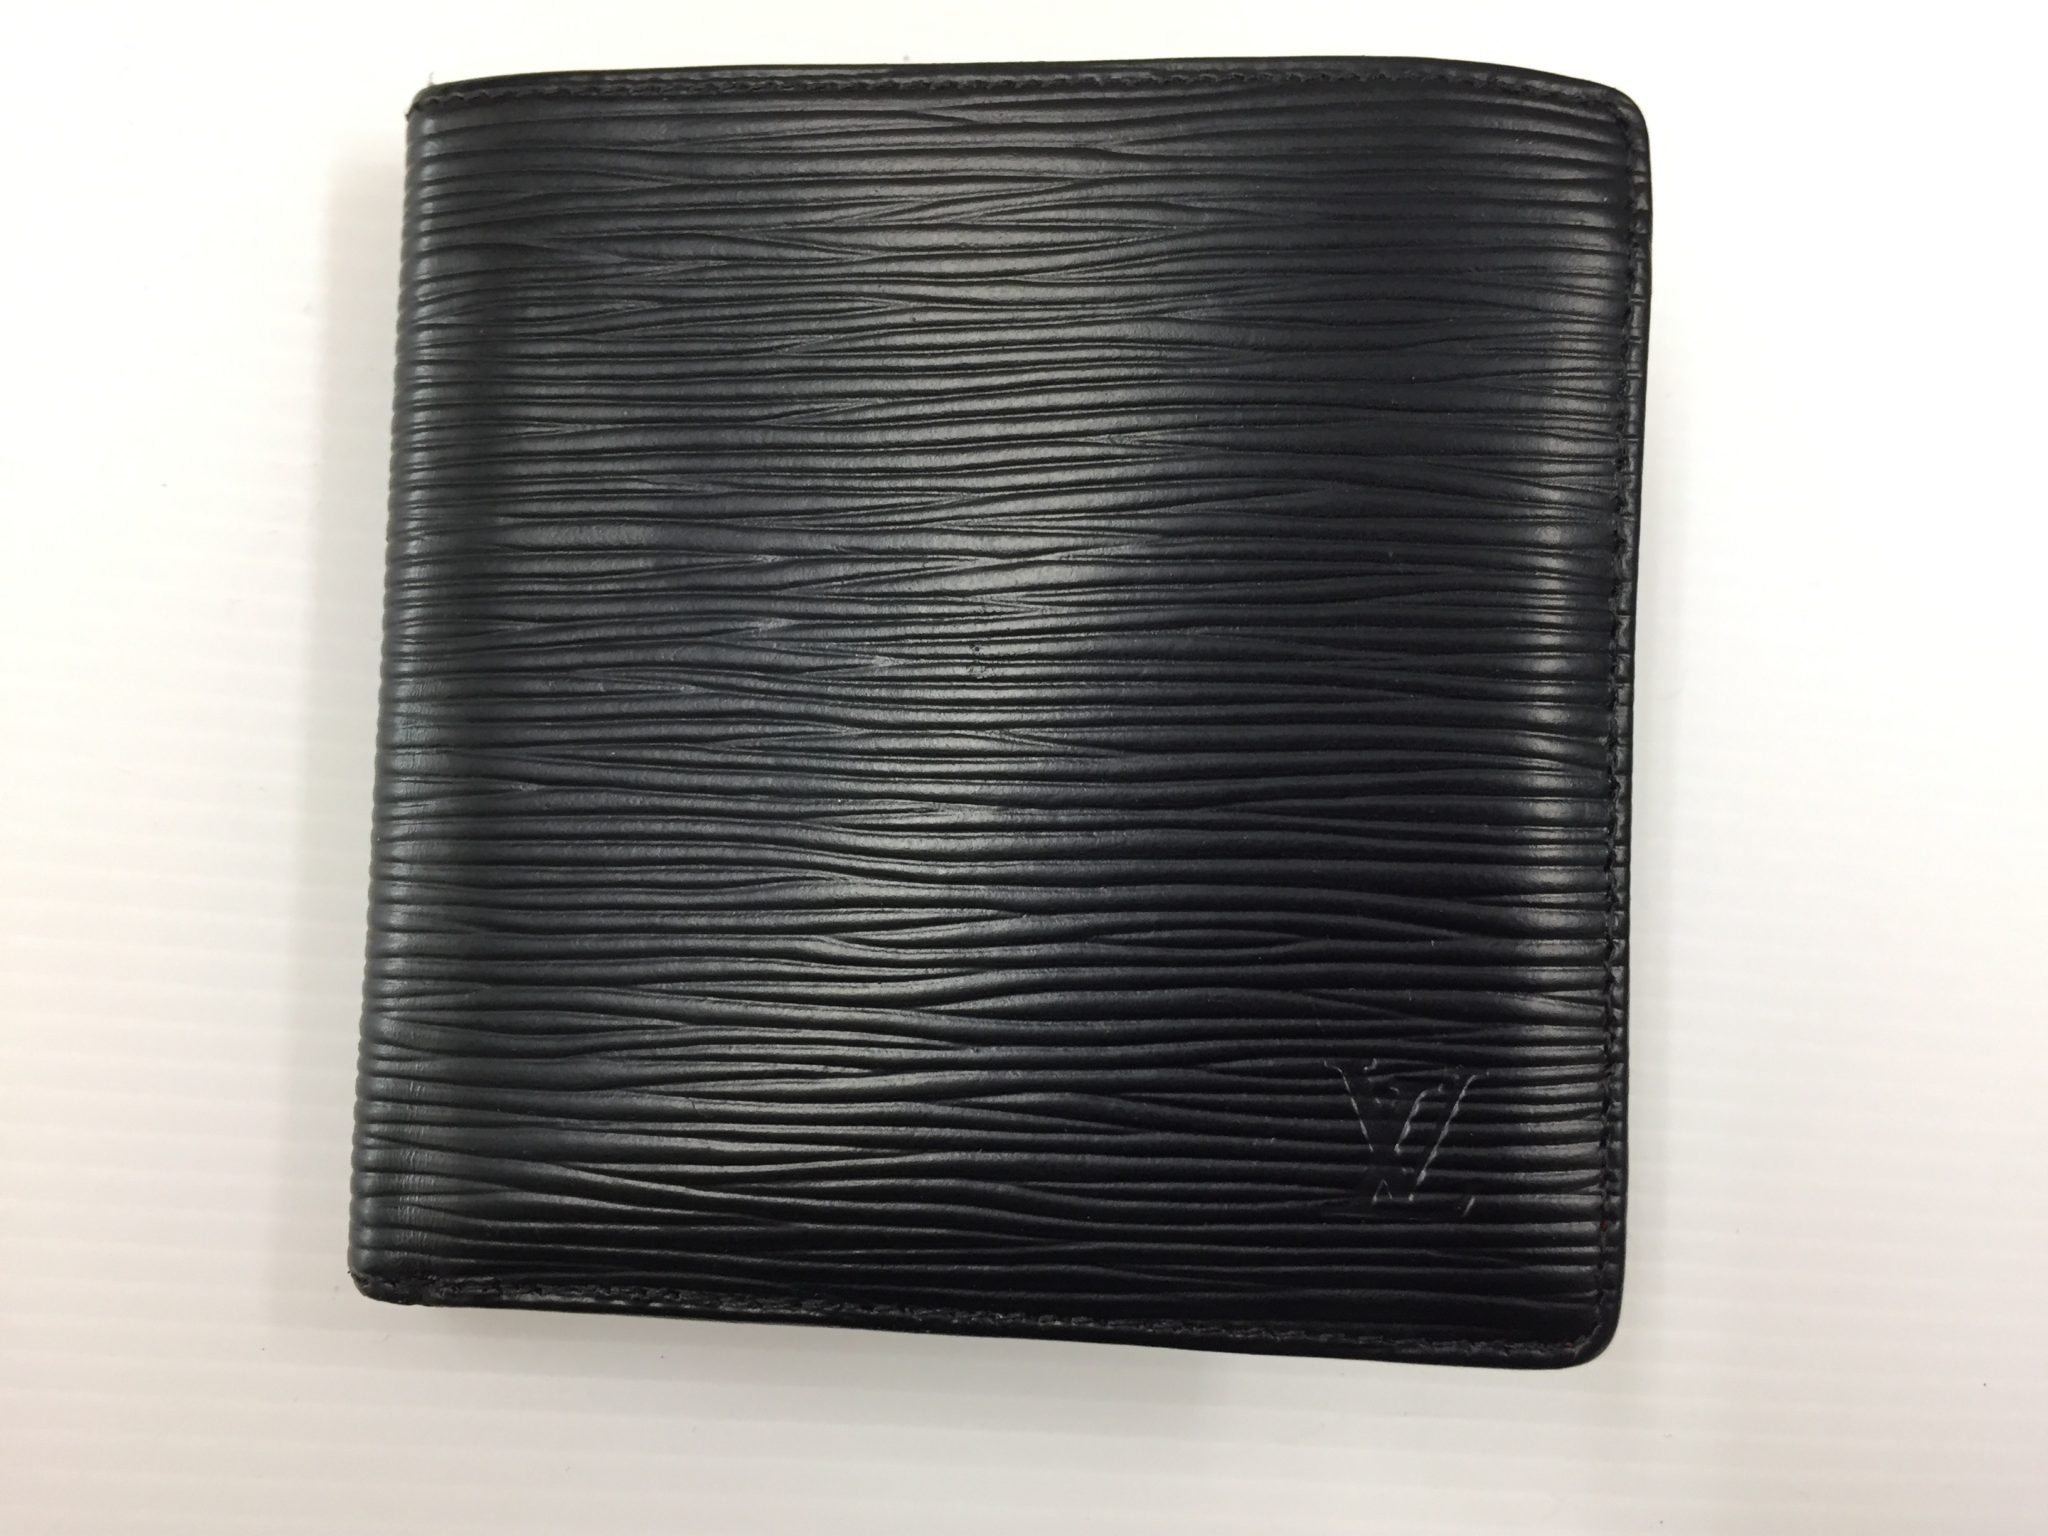 20-40 ルイヴィトン(Louis Vuitton)エピお財布黒へお色替えアフター